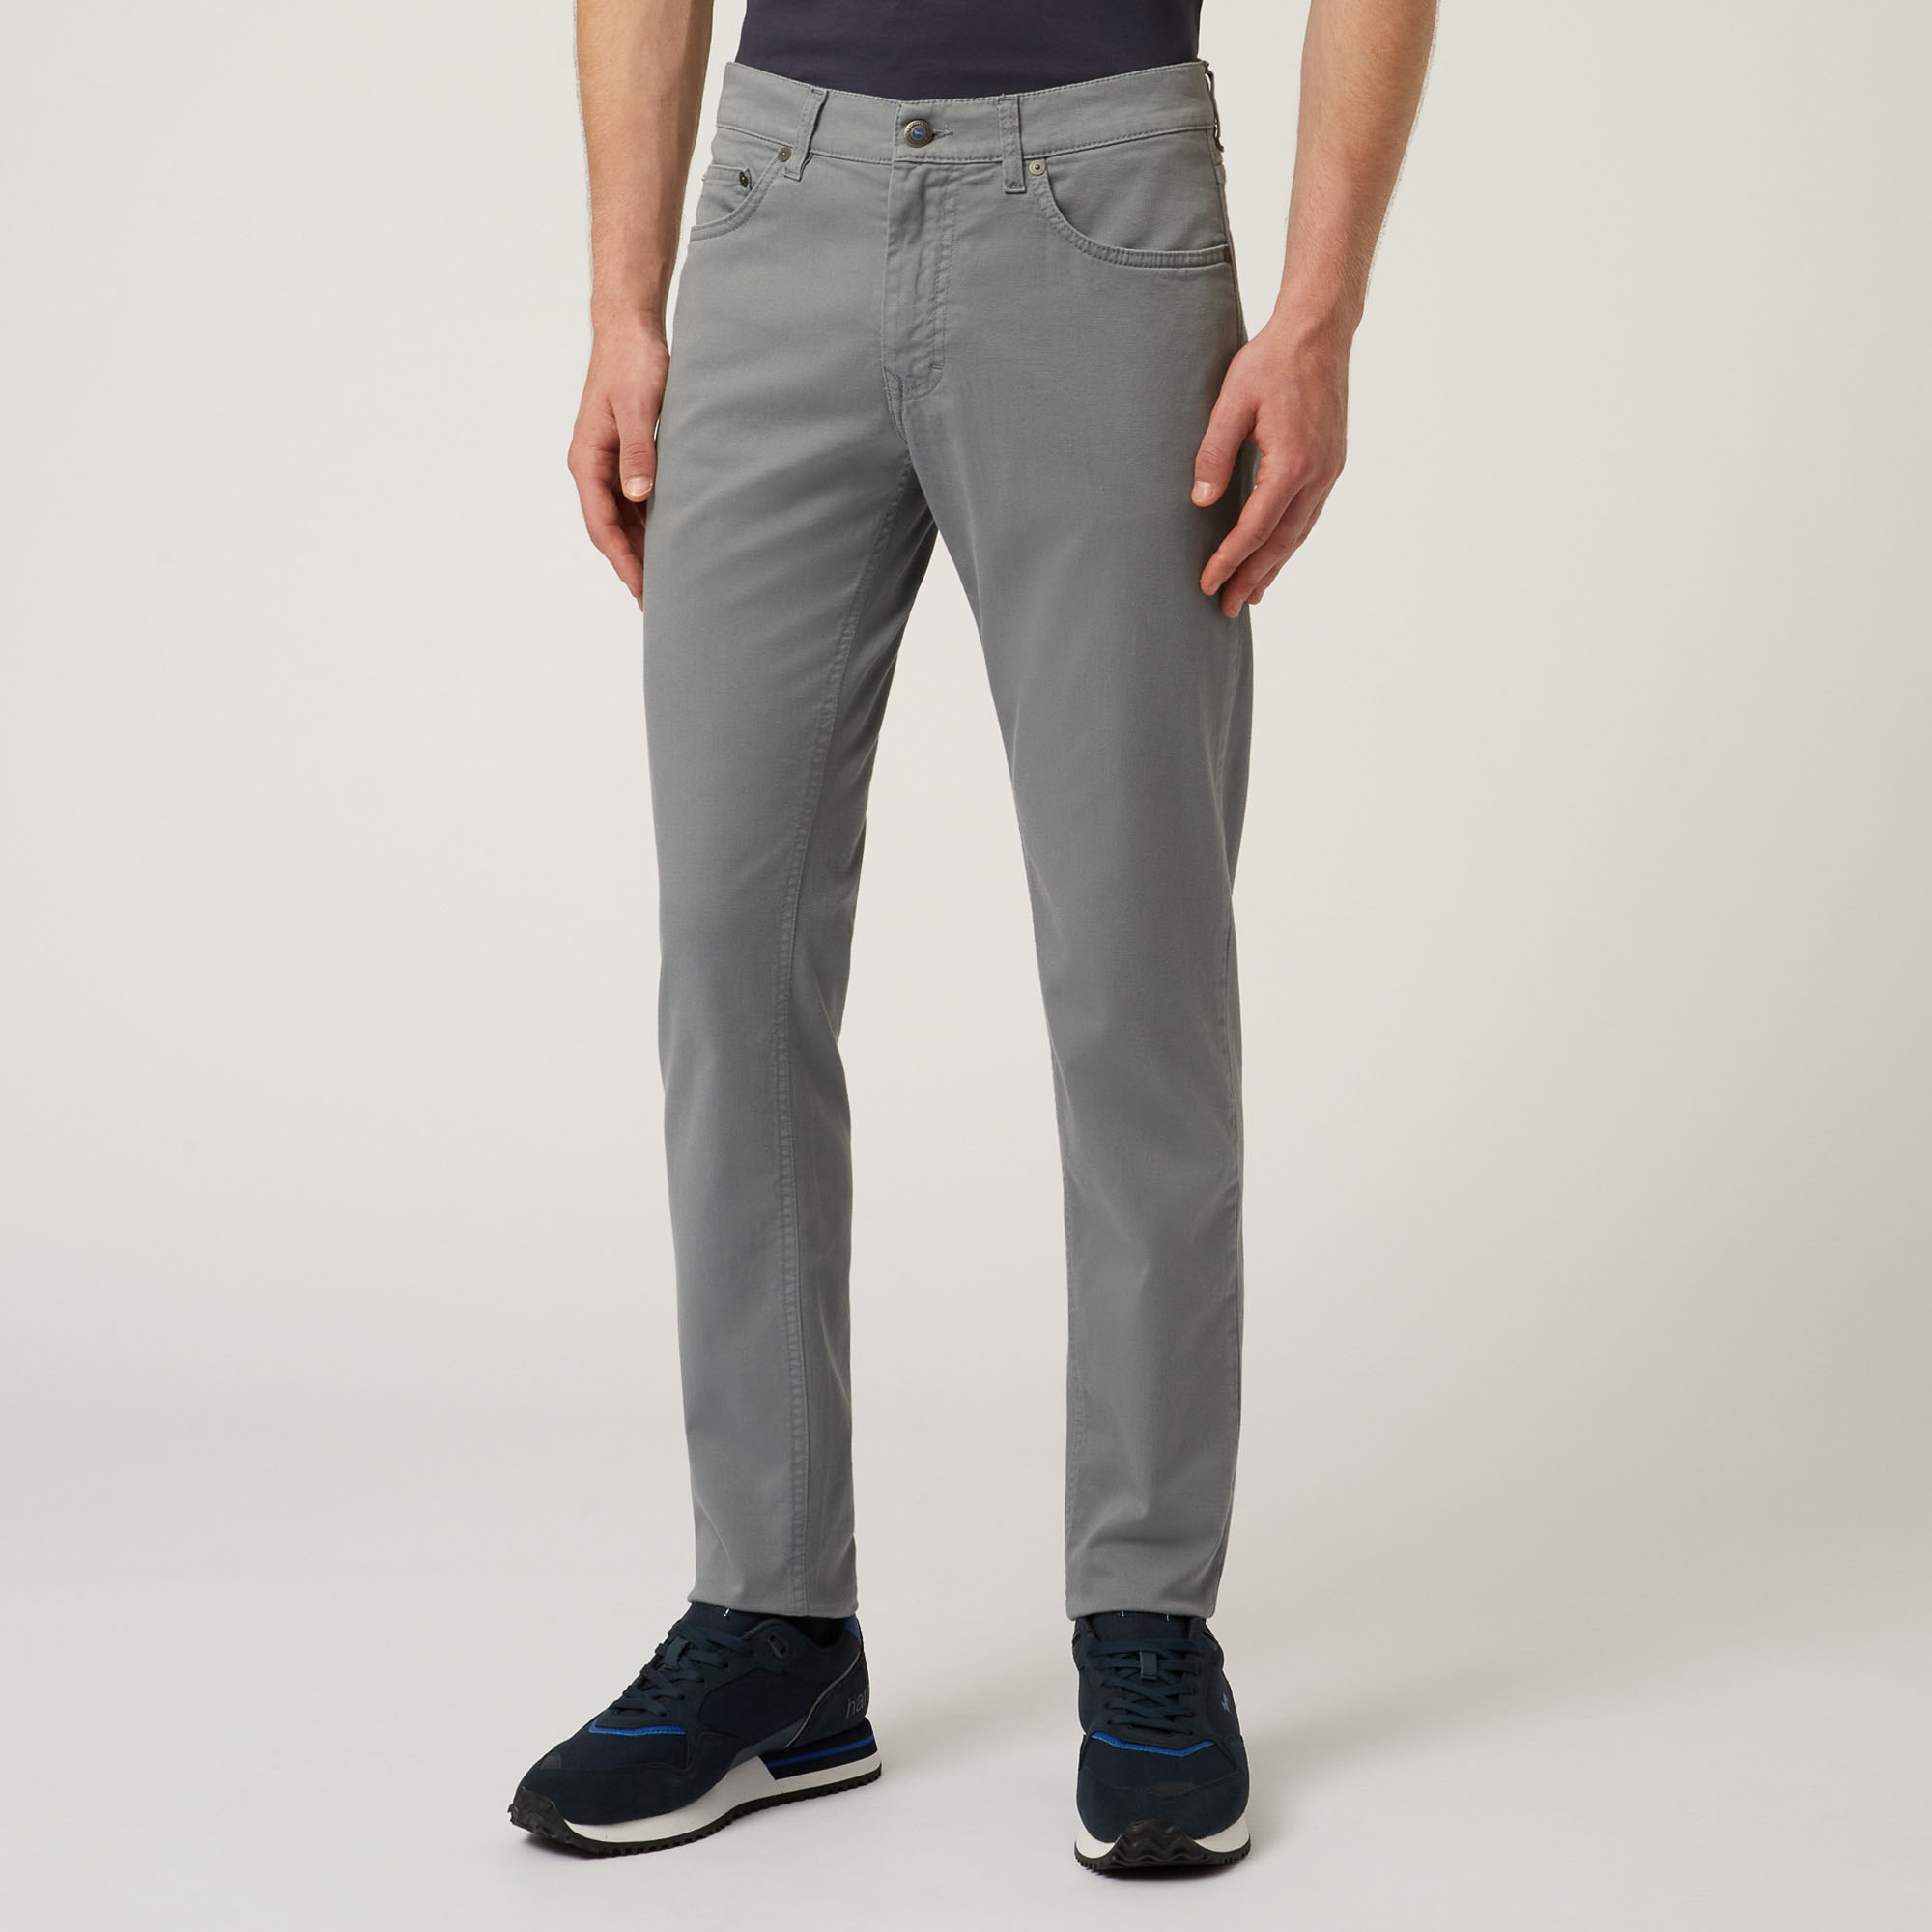 Essentials trousers in plain coloured cotton: Luxury italian Men's